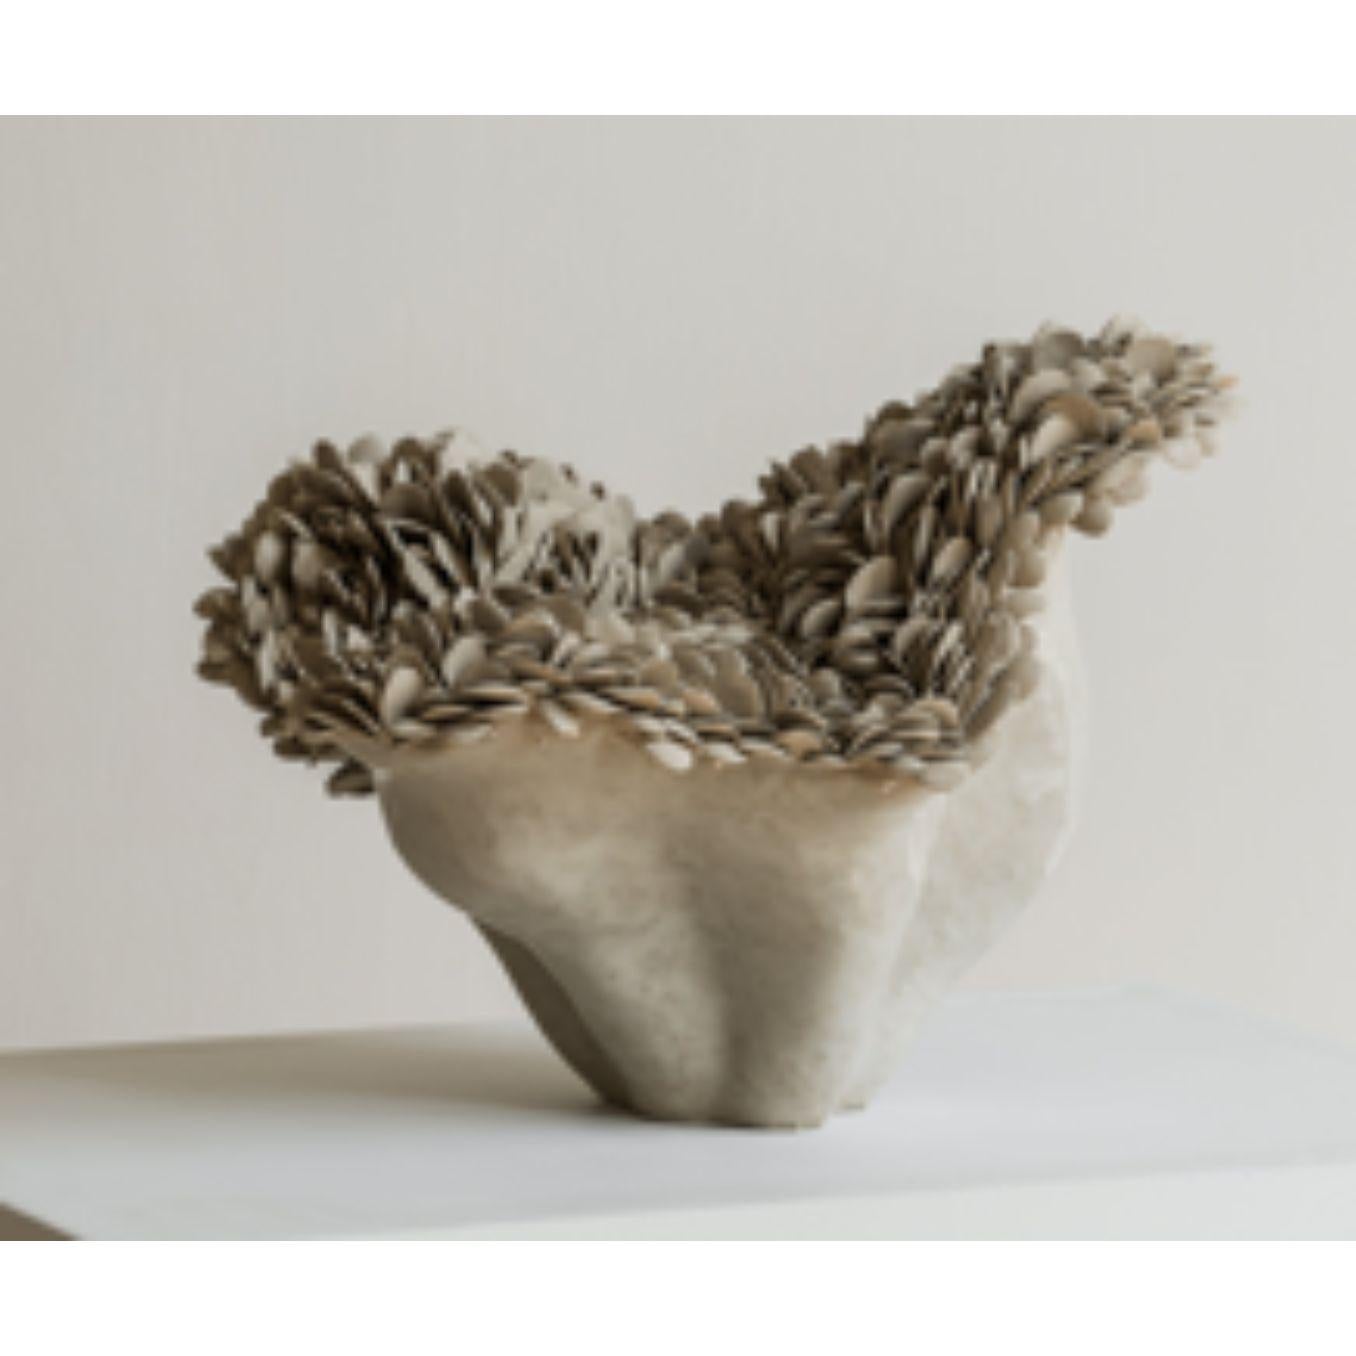 Nubes, petite sculpture de Hanna Heino
Dimensions : D 28 x L 32 x H 30 cm
MATERIAL : Fabriqué à la main, argile gréseuse
Disponible également en différentes dimensions. 


Hanna Heino est une artiste contemporaine finlandaise spécialisée dans